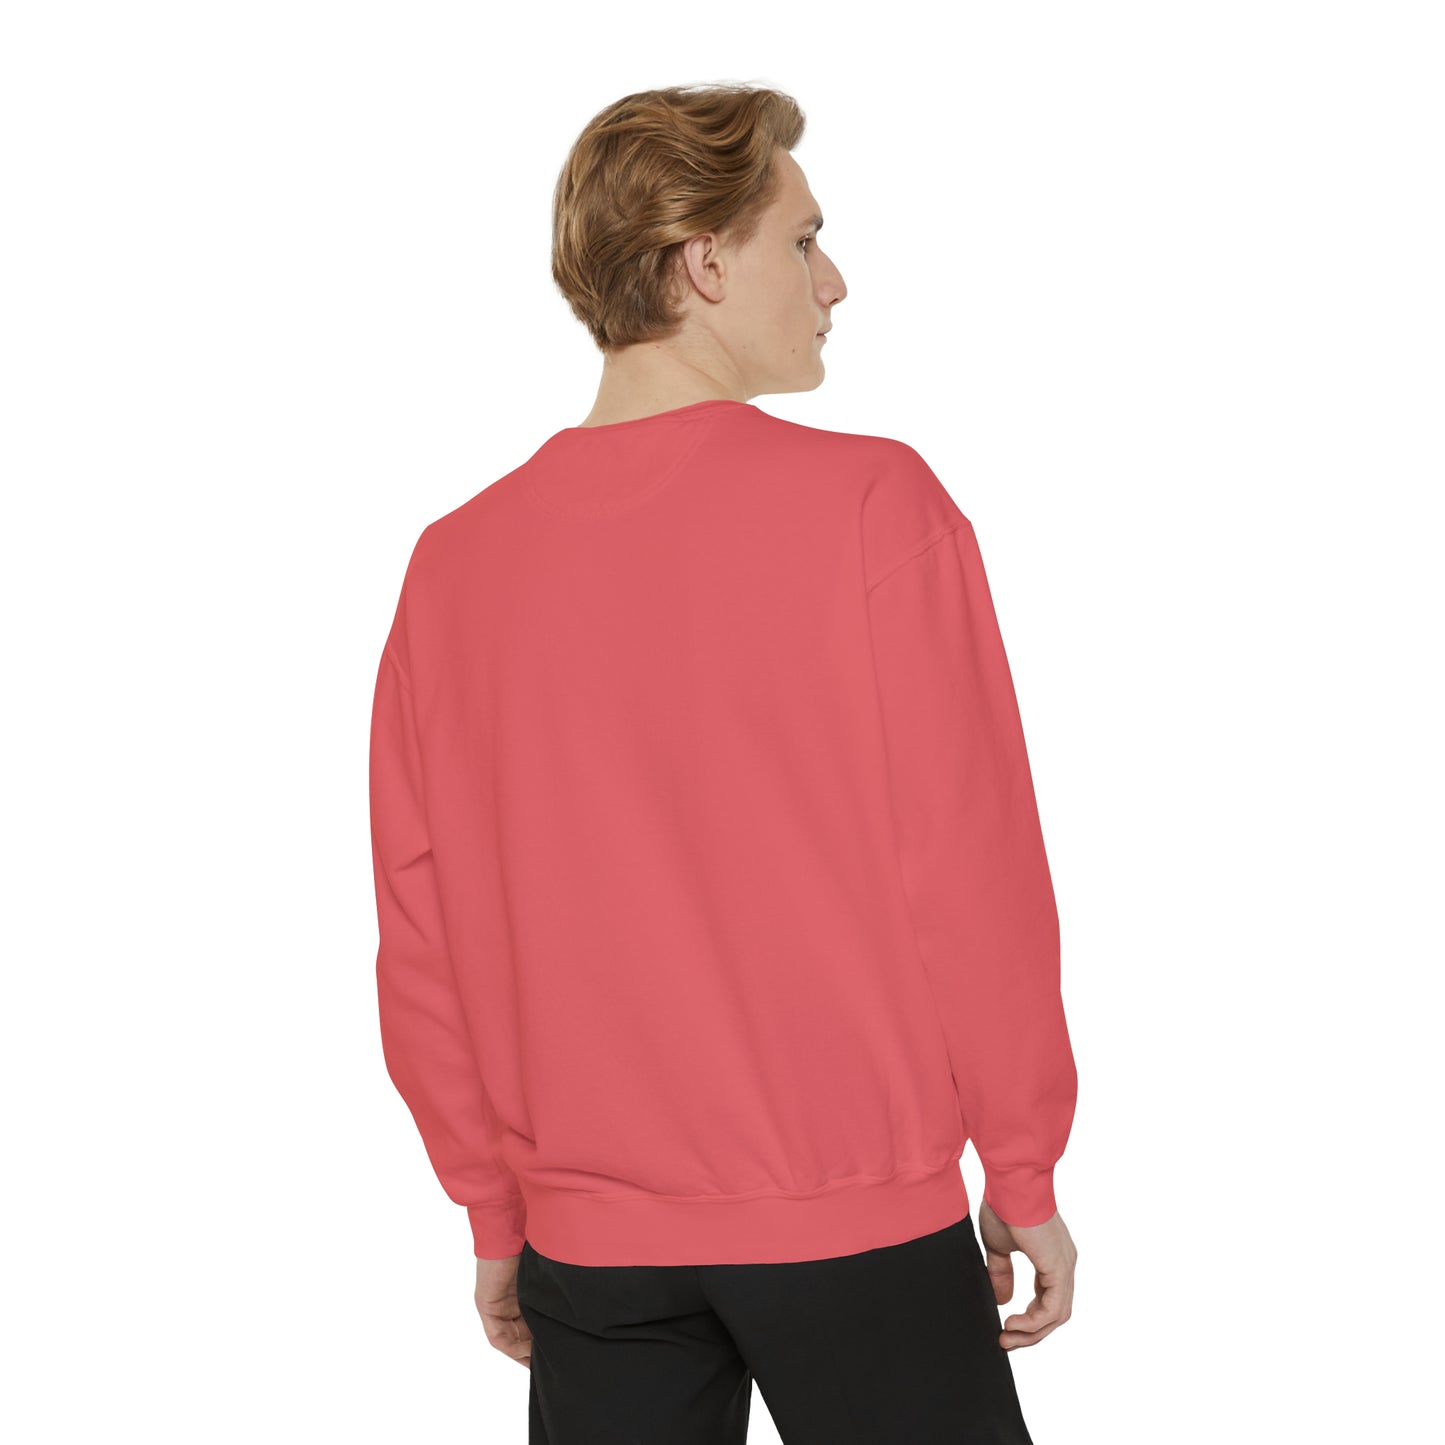 "Succa For Love" Comfort Colors Sweatshirt | Valentine's Sweatshirt for Plant Lover | Funny Valentine's Sweatshirt for Plant Lady